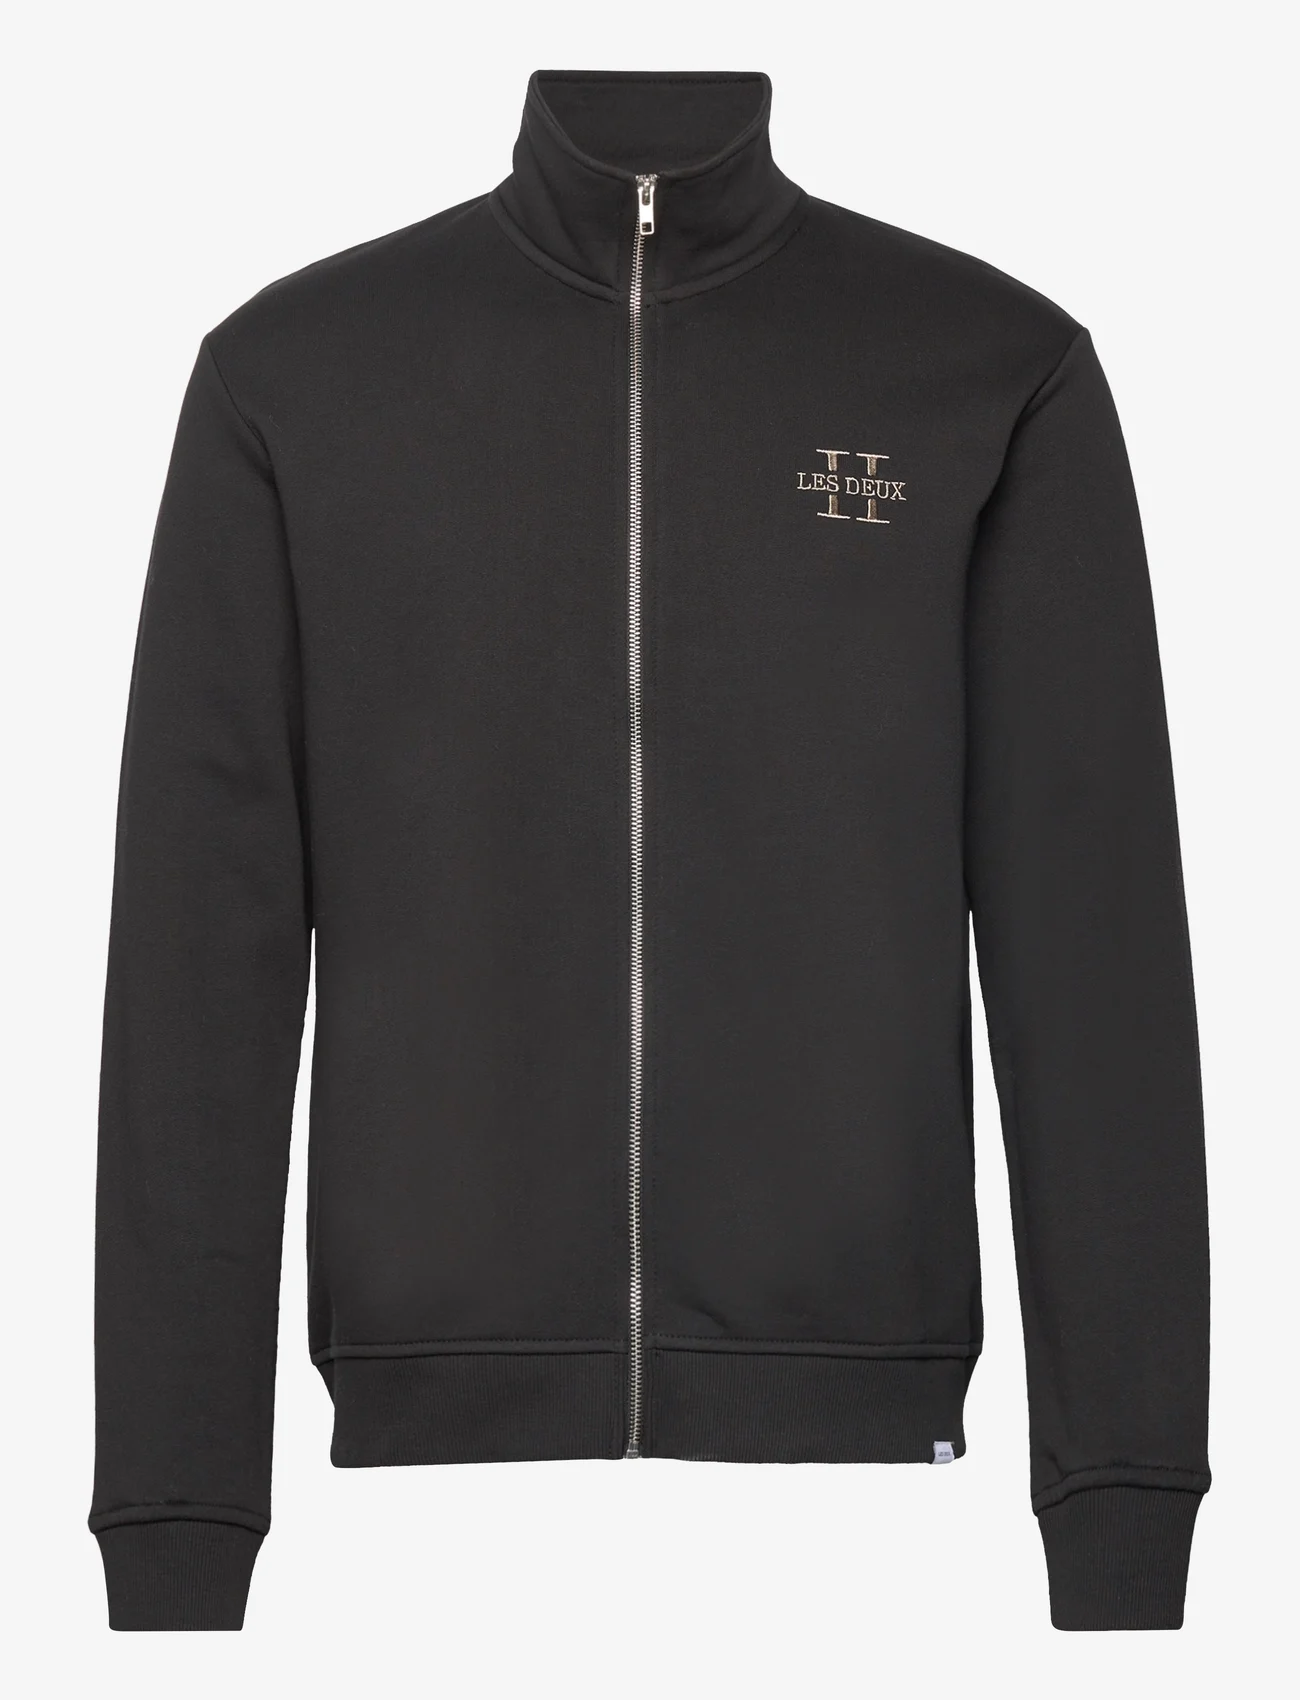 Les Deux - Les Deux II Full Zip Sweatshirt 2.0 - sweatshirts - black/platinum - 0